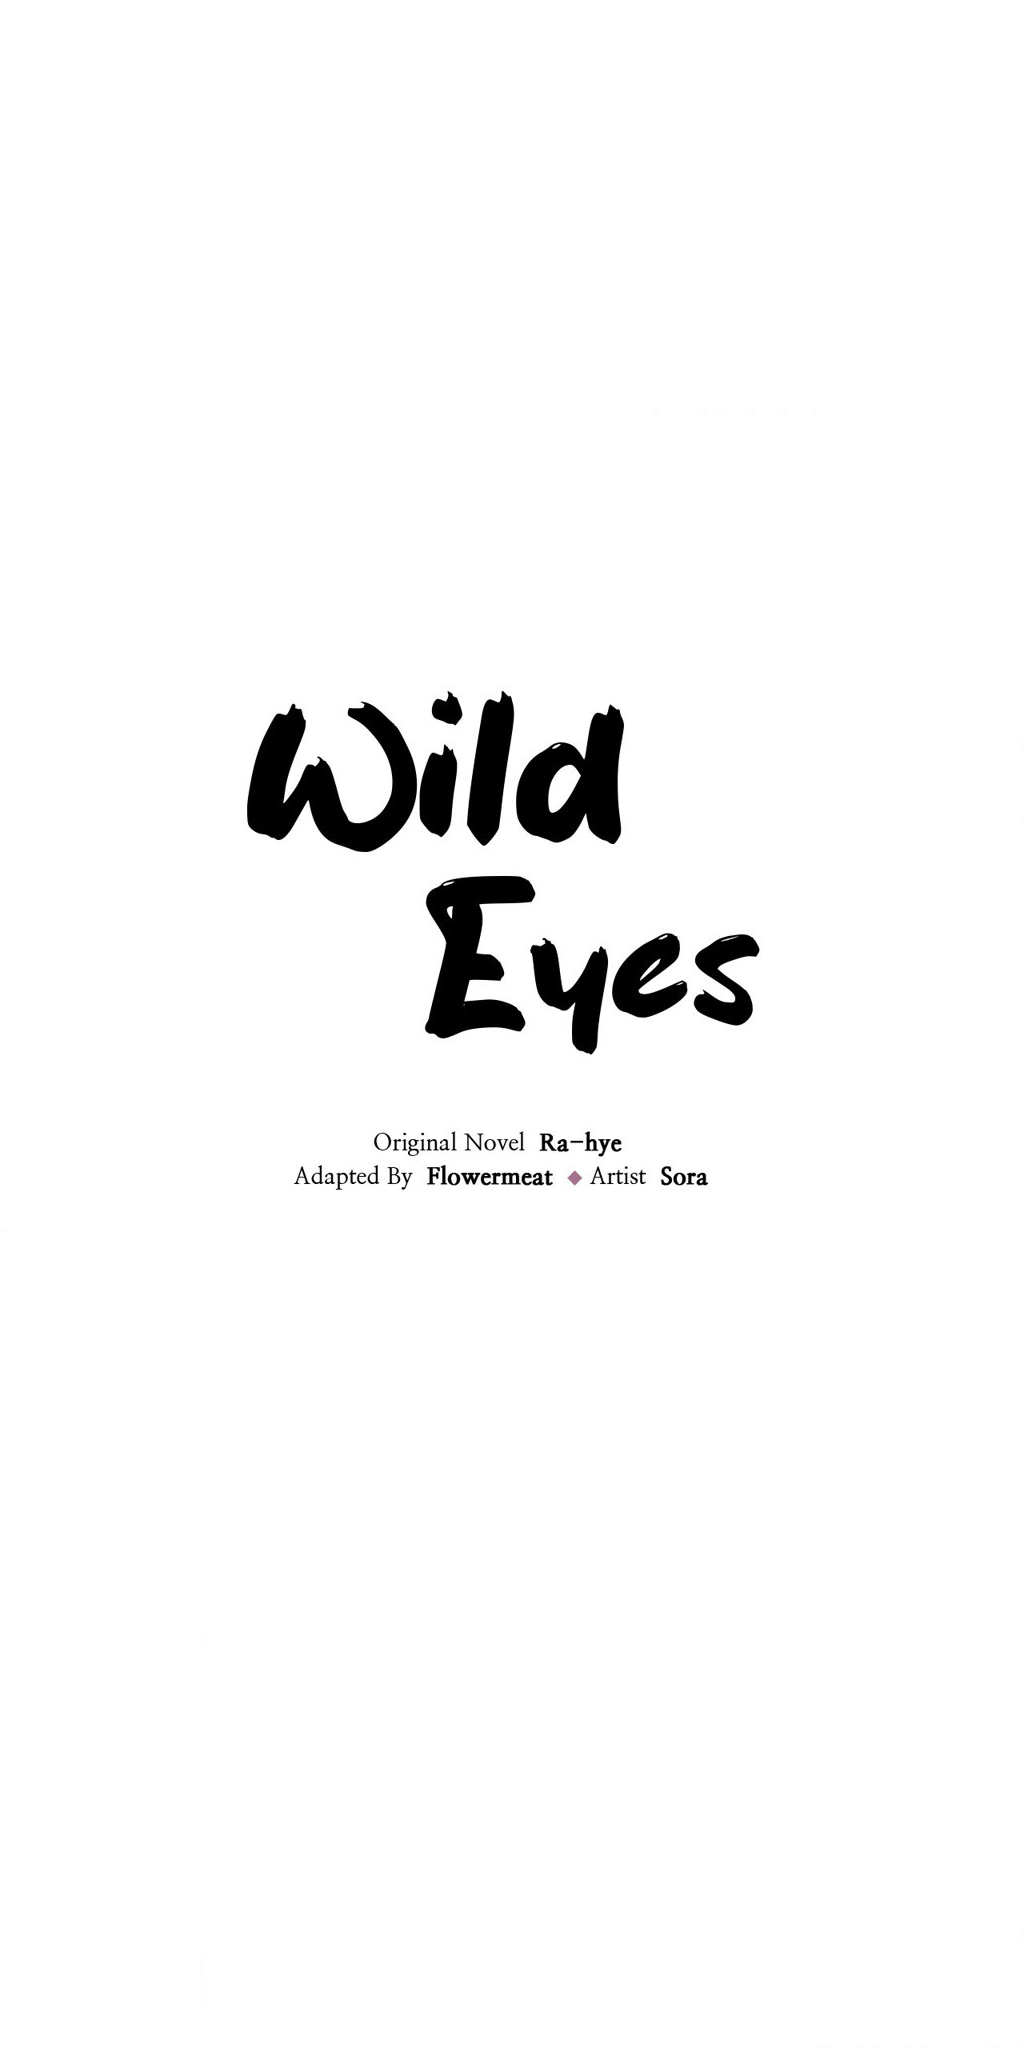 Wild Eyes NEW image